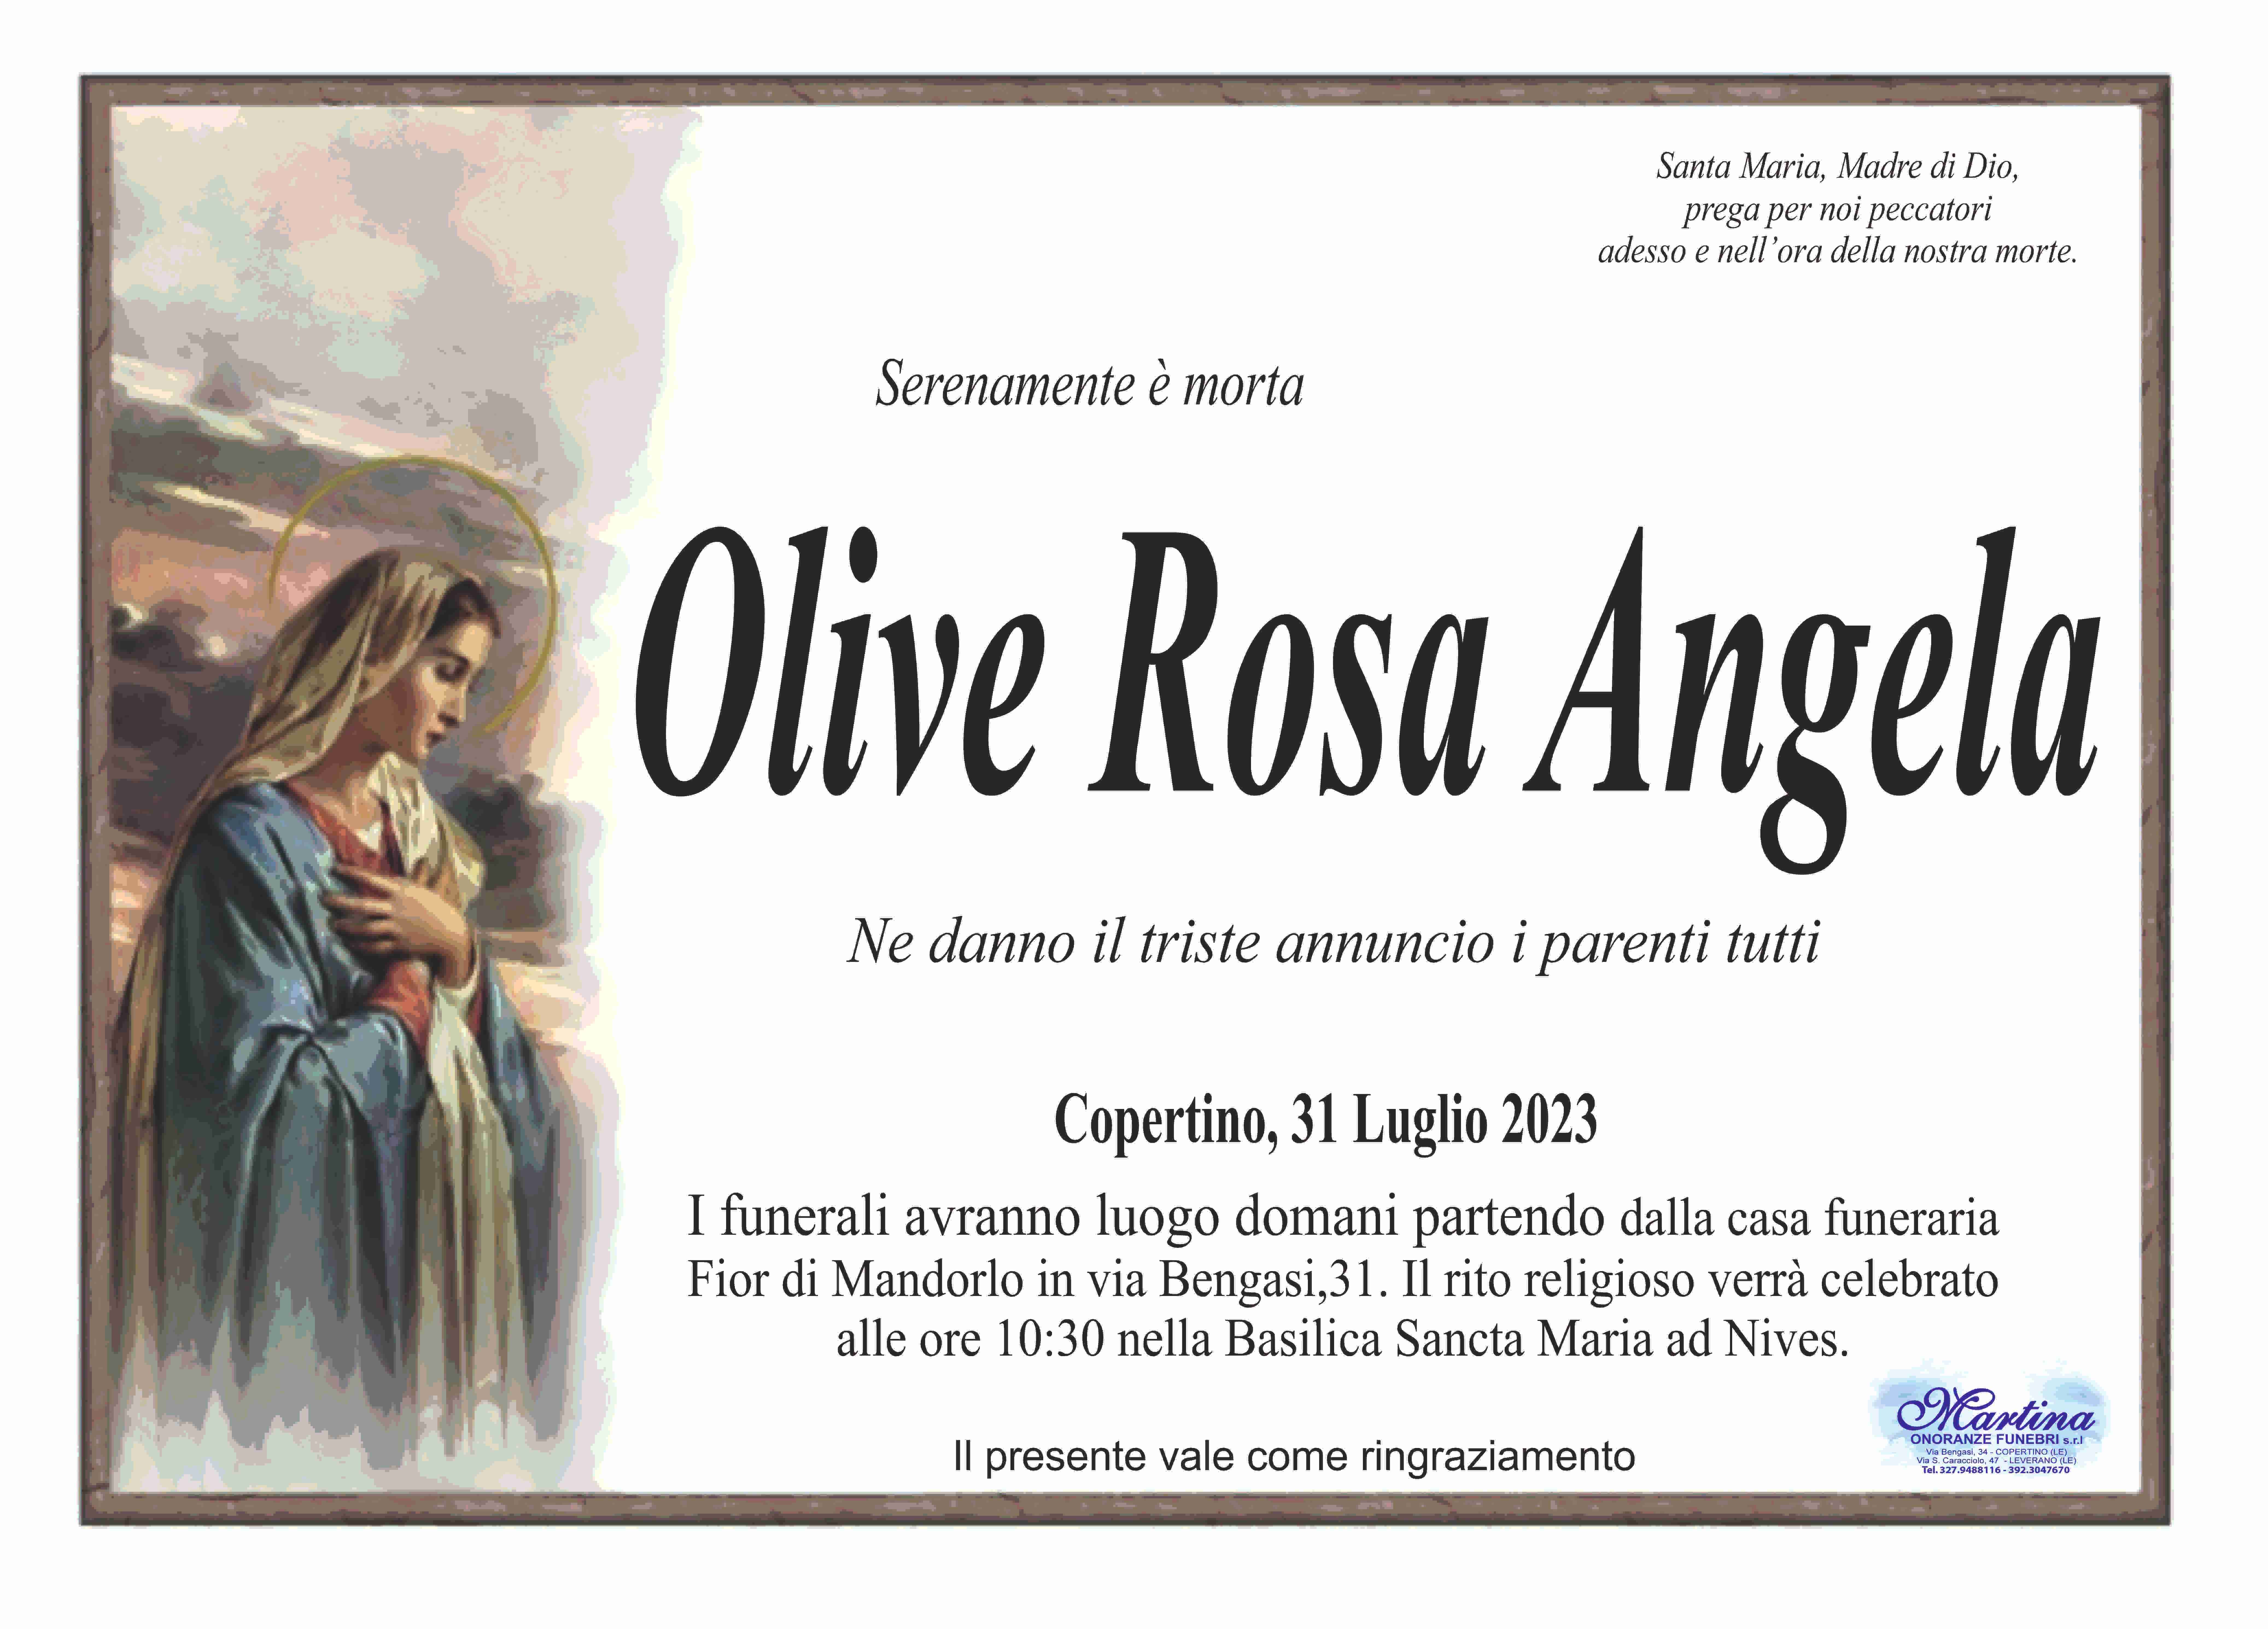 Rosa Angela Olive